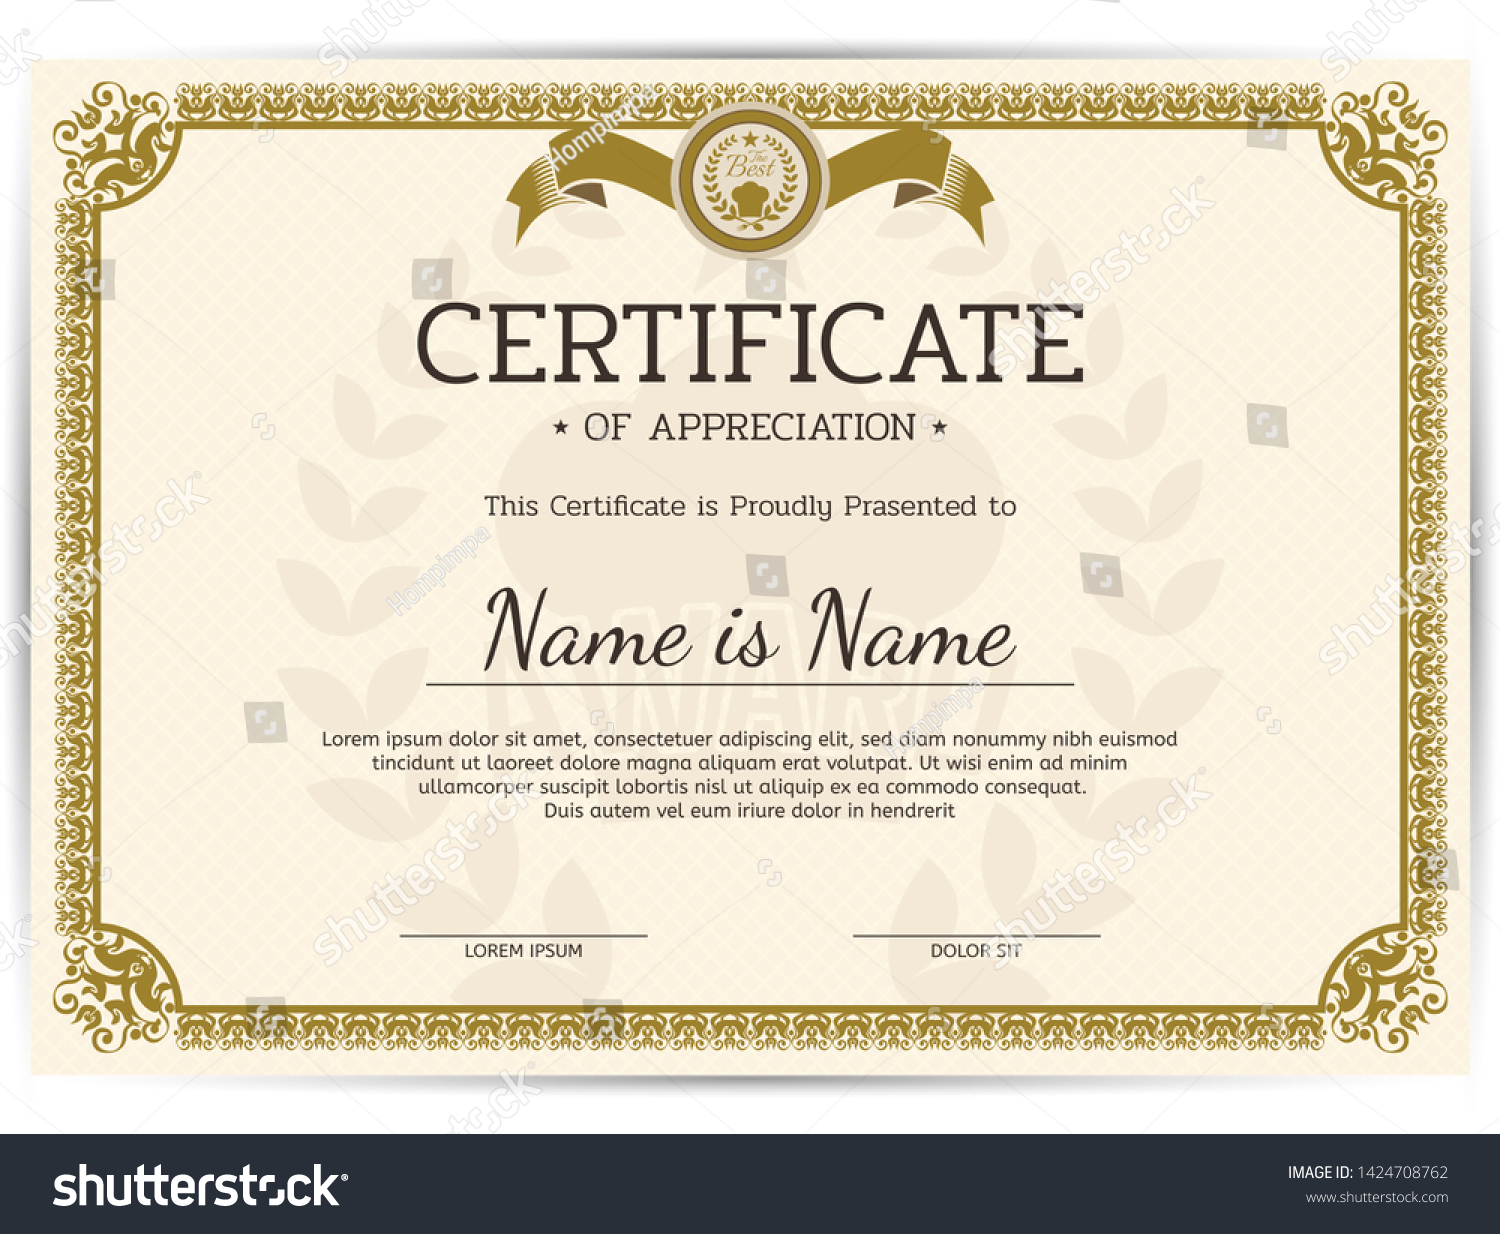 Vintage Certificate Appreciation Award Template Template Stock